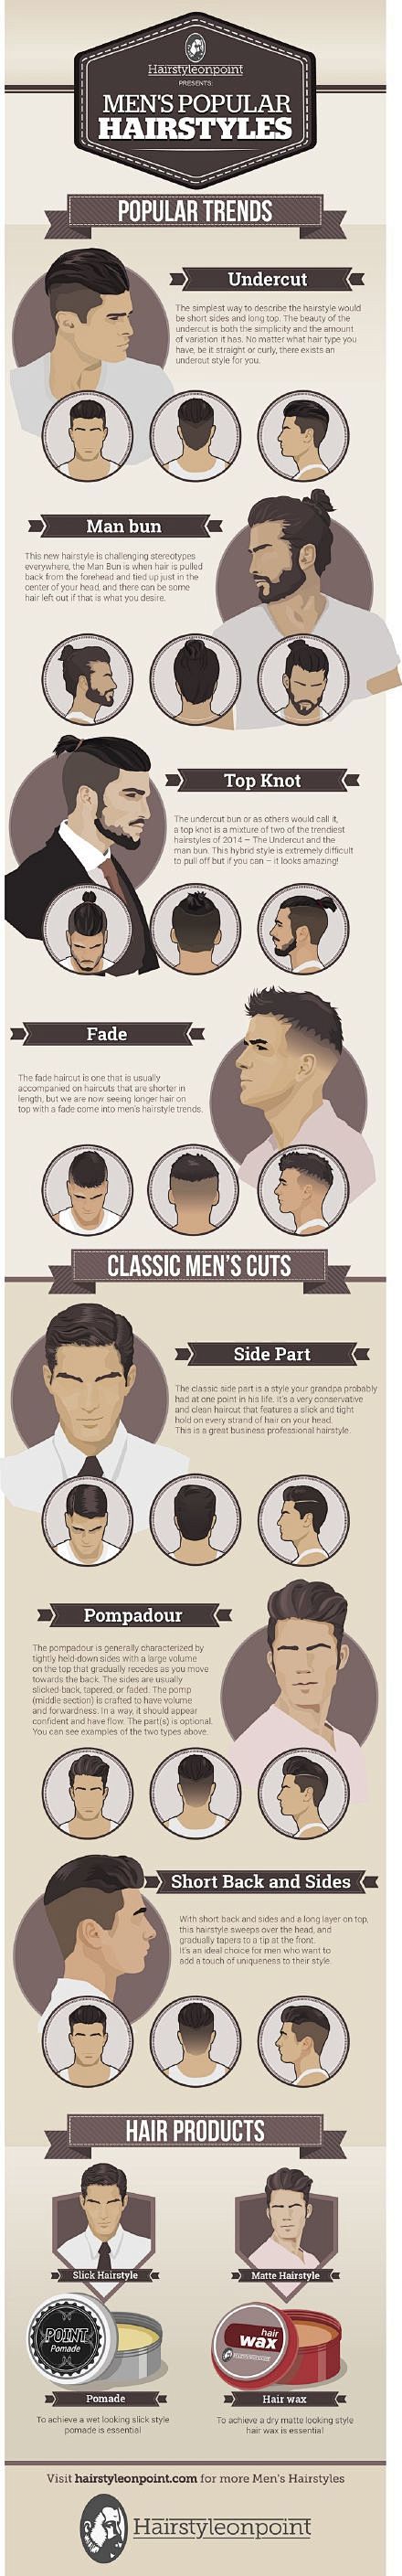 今天早上某群在讨论男士发型感觉去年特别流行这种头顶头发比较多余下